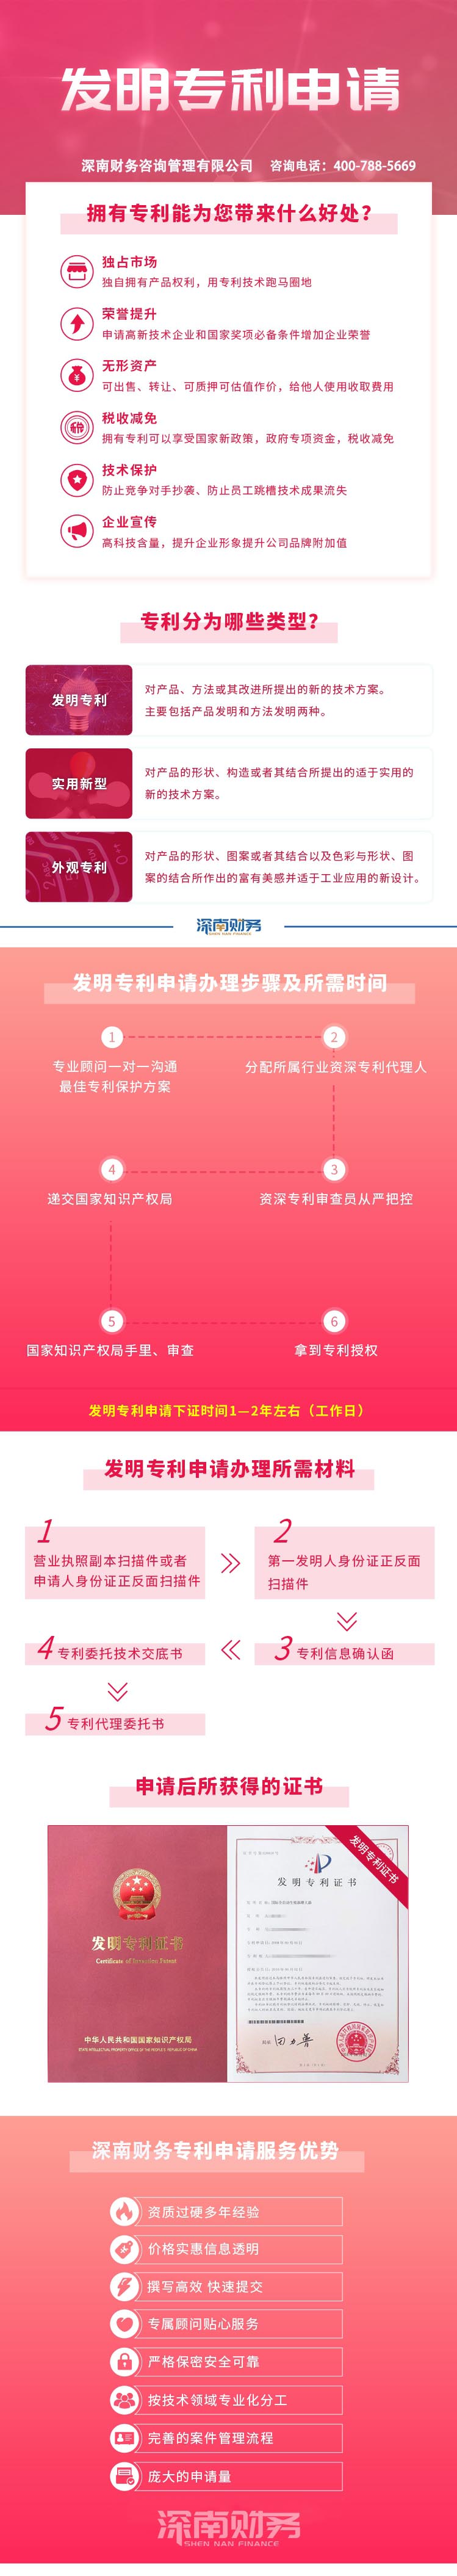 深圳外觀專利申請